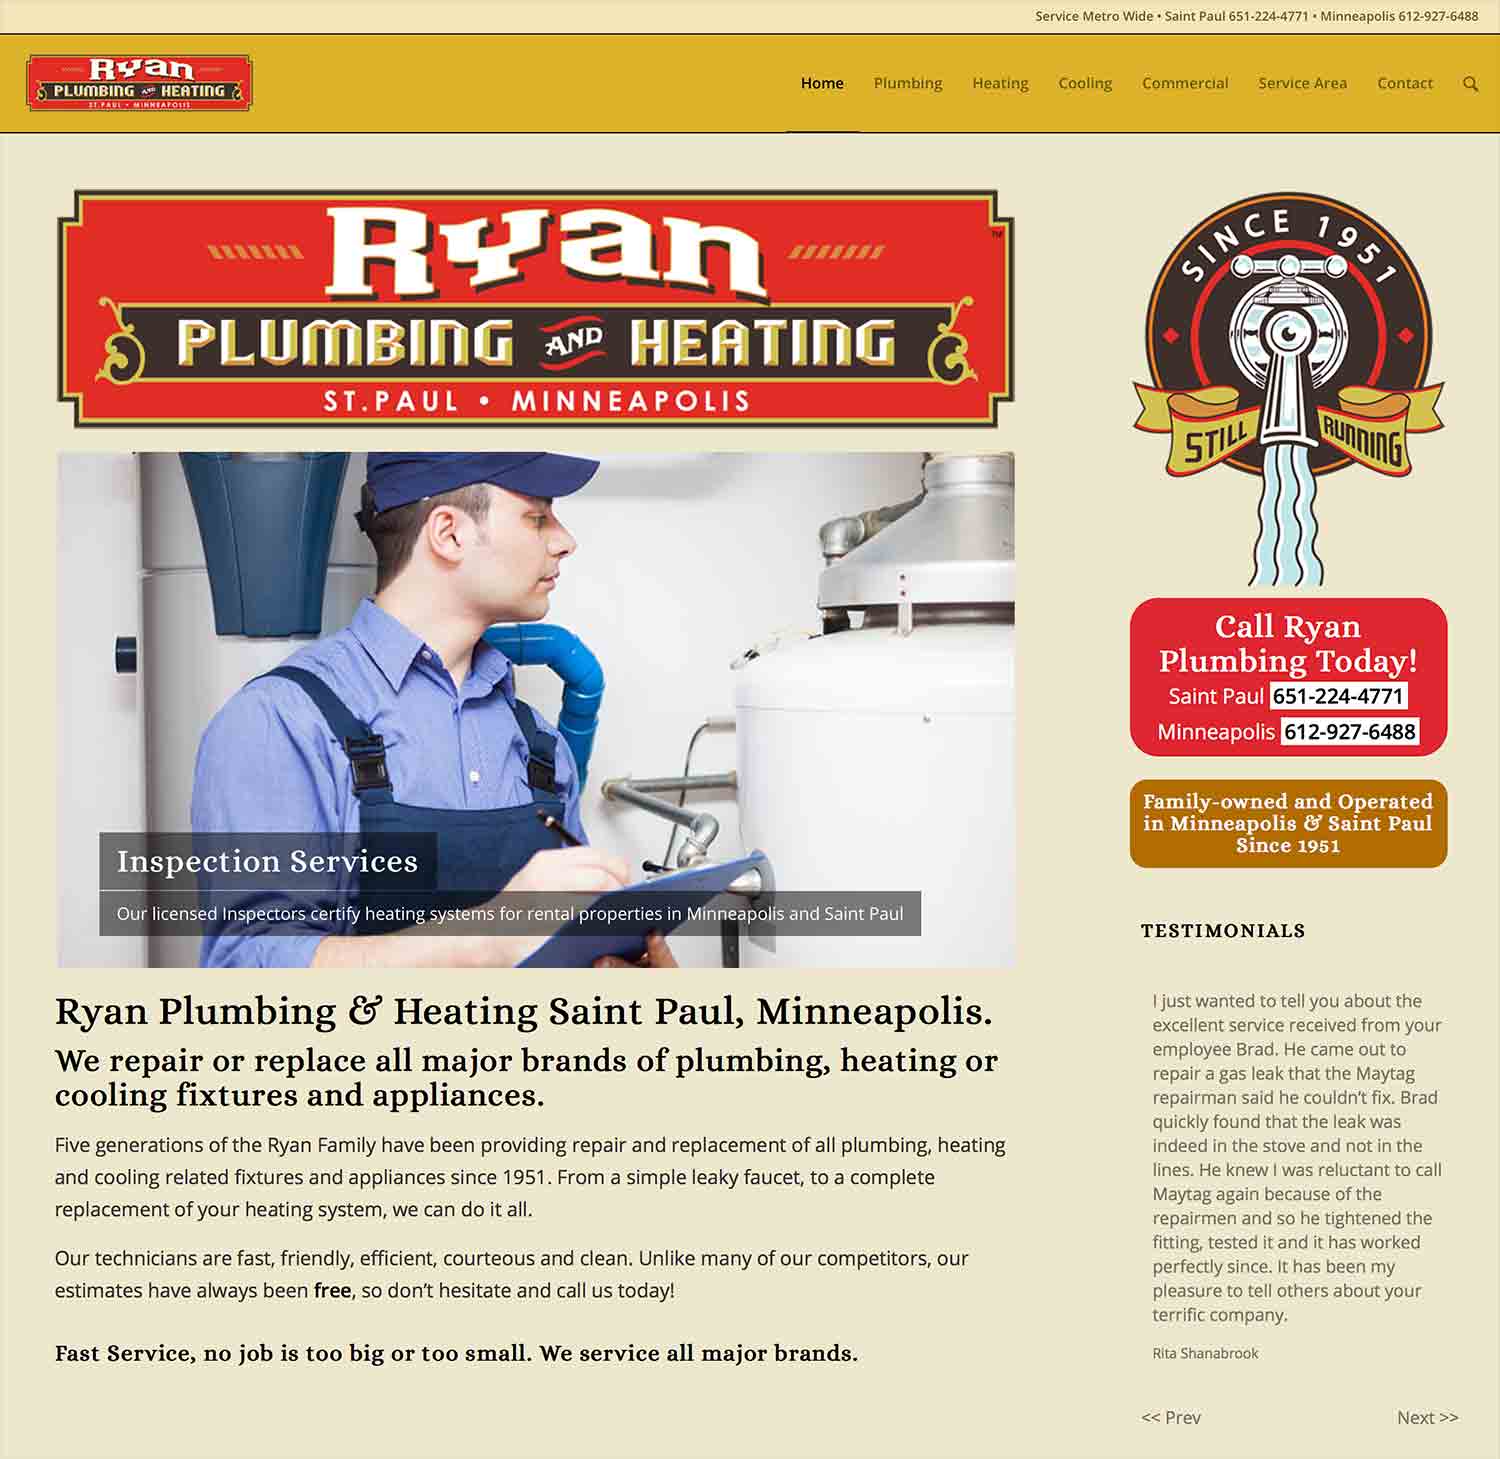 ryan-plumbing-and-heating-responsive-website-desktop-version